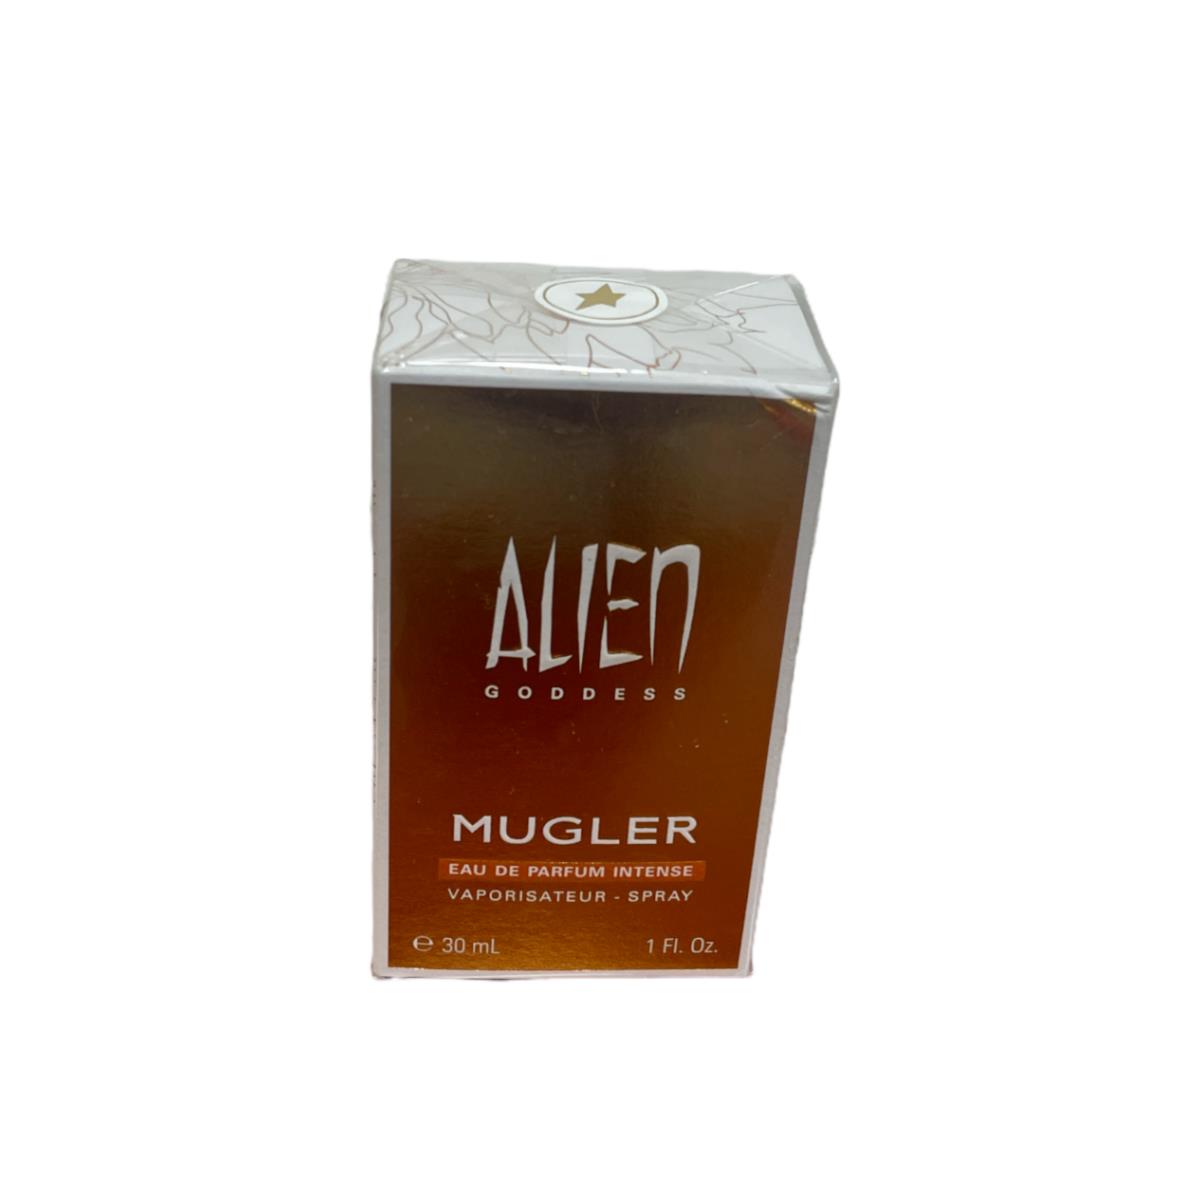 Alien Goddess Mugler Eau De Parfum 30mL / 1oz